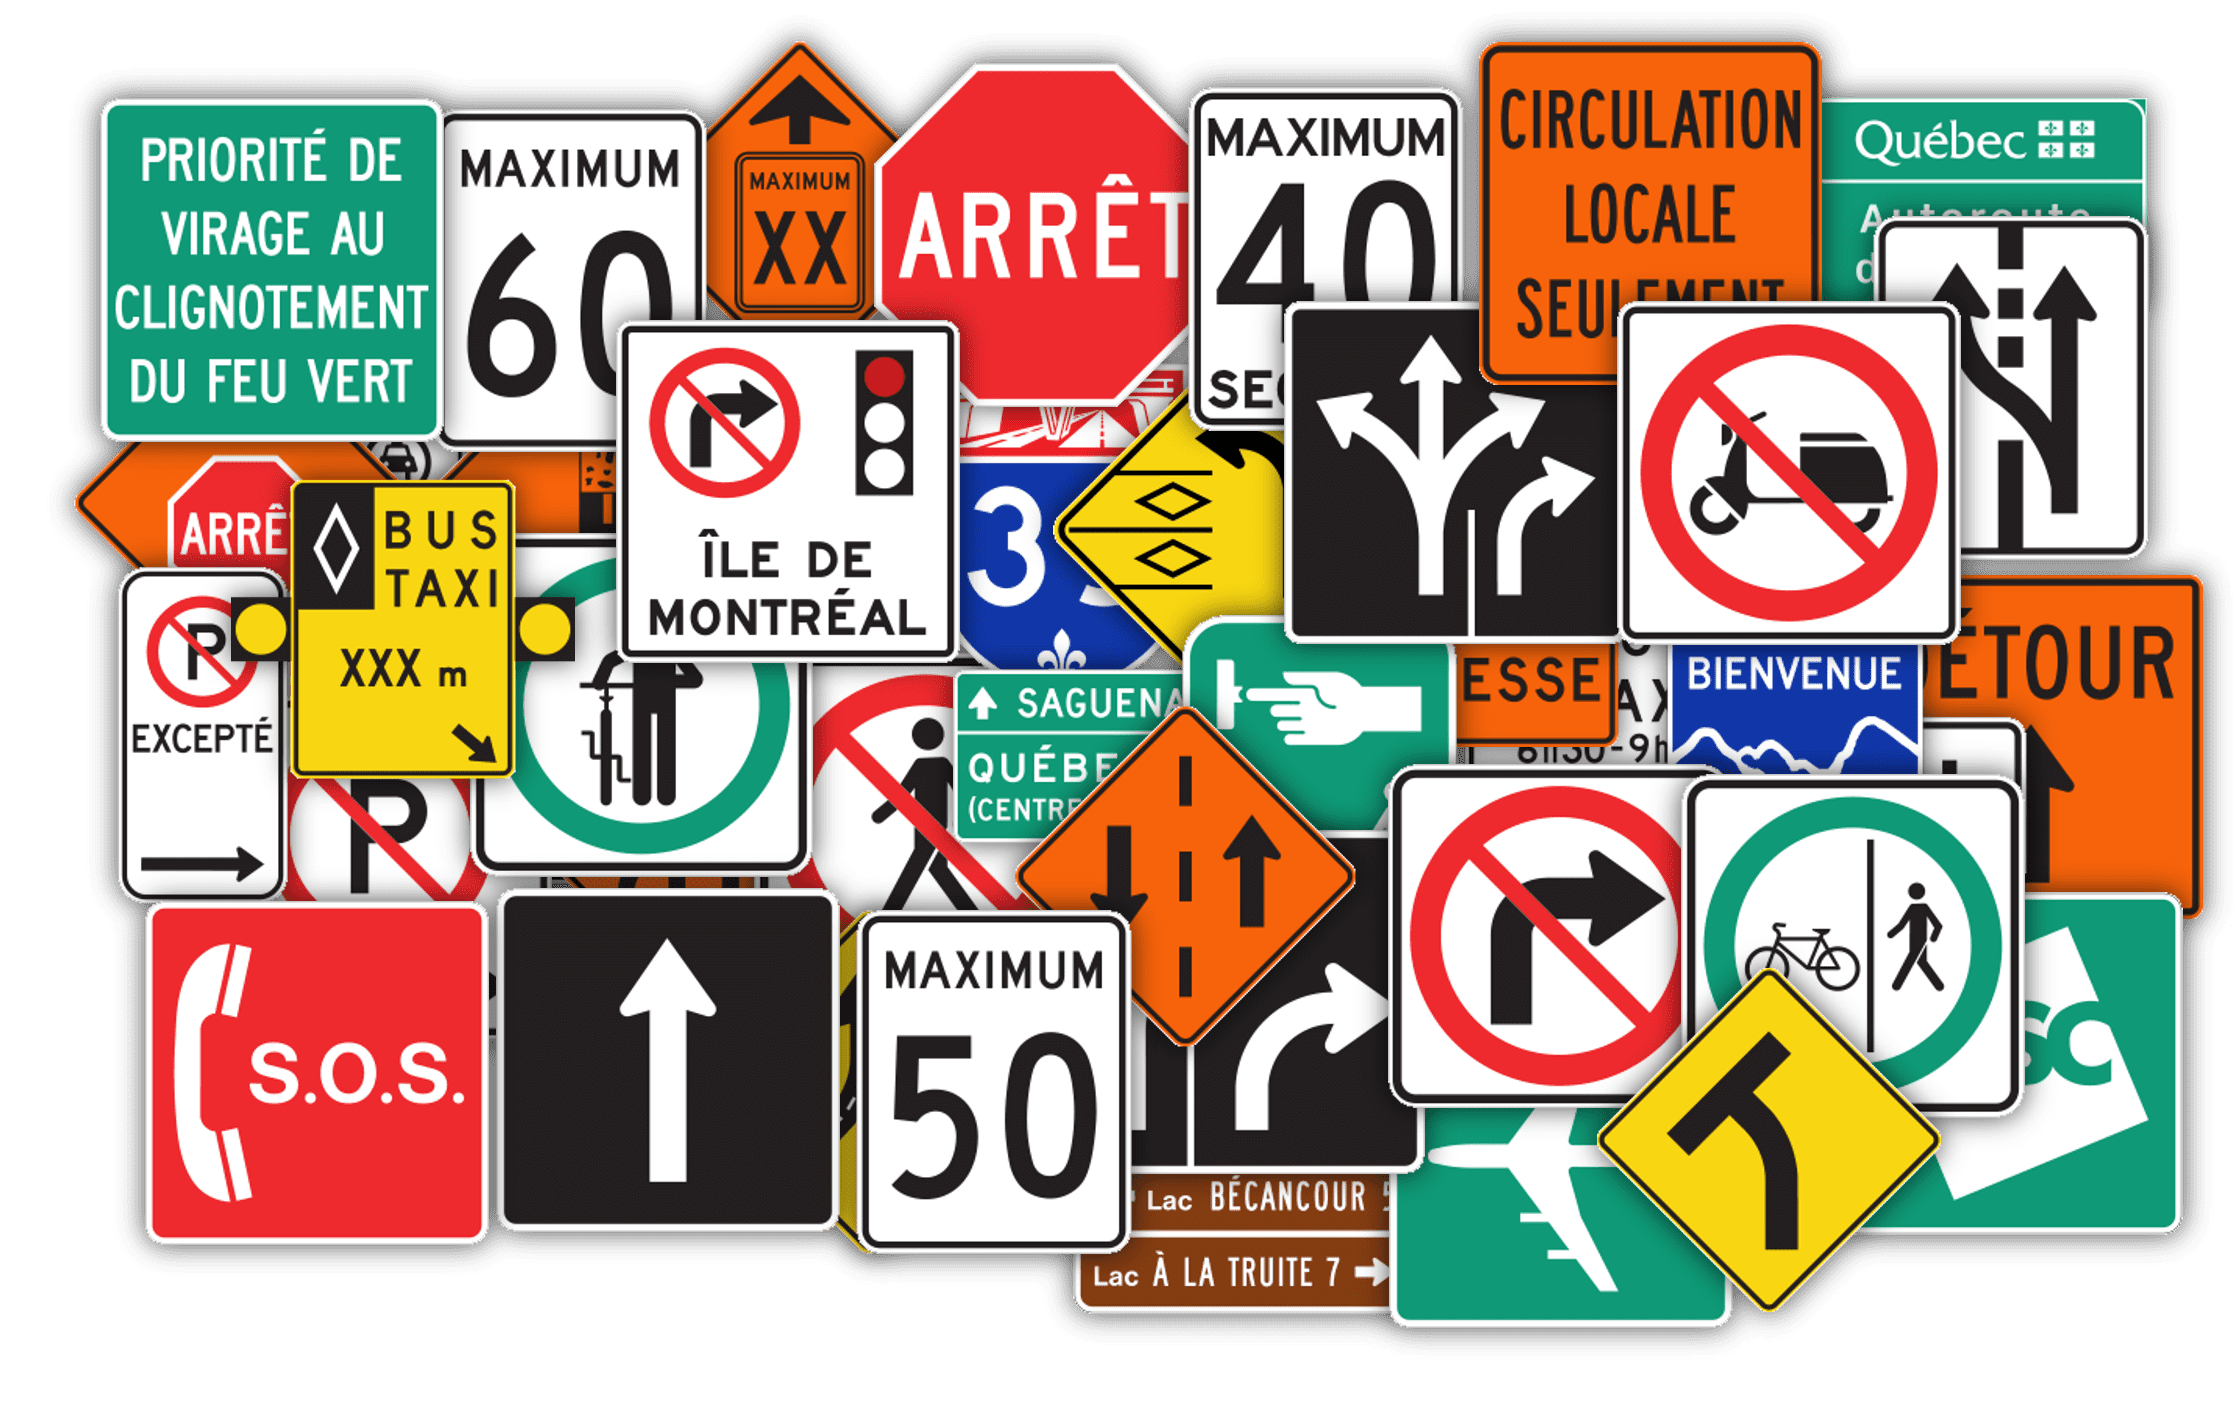 Road sign in Quebec